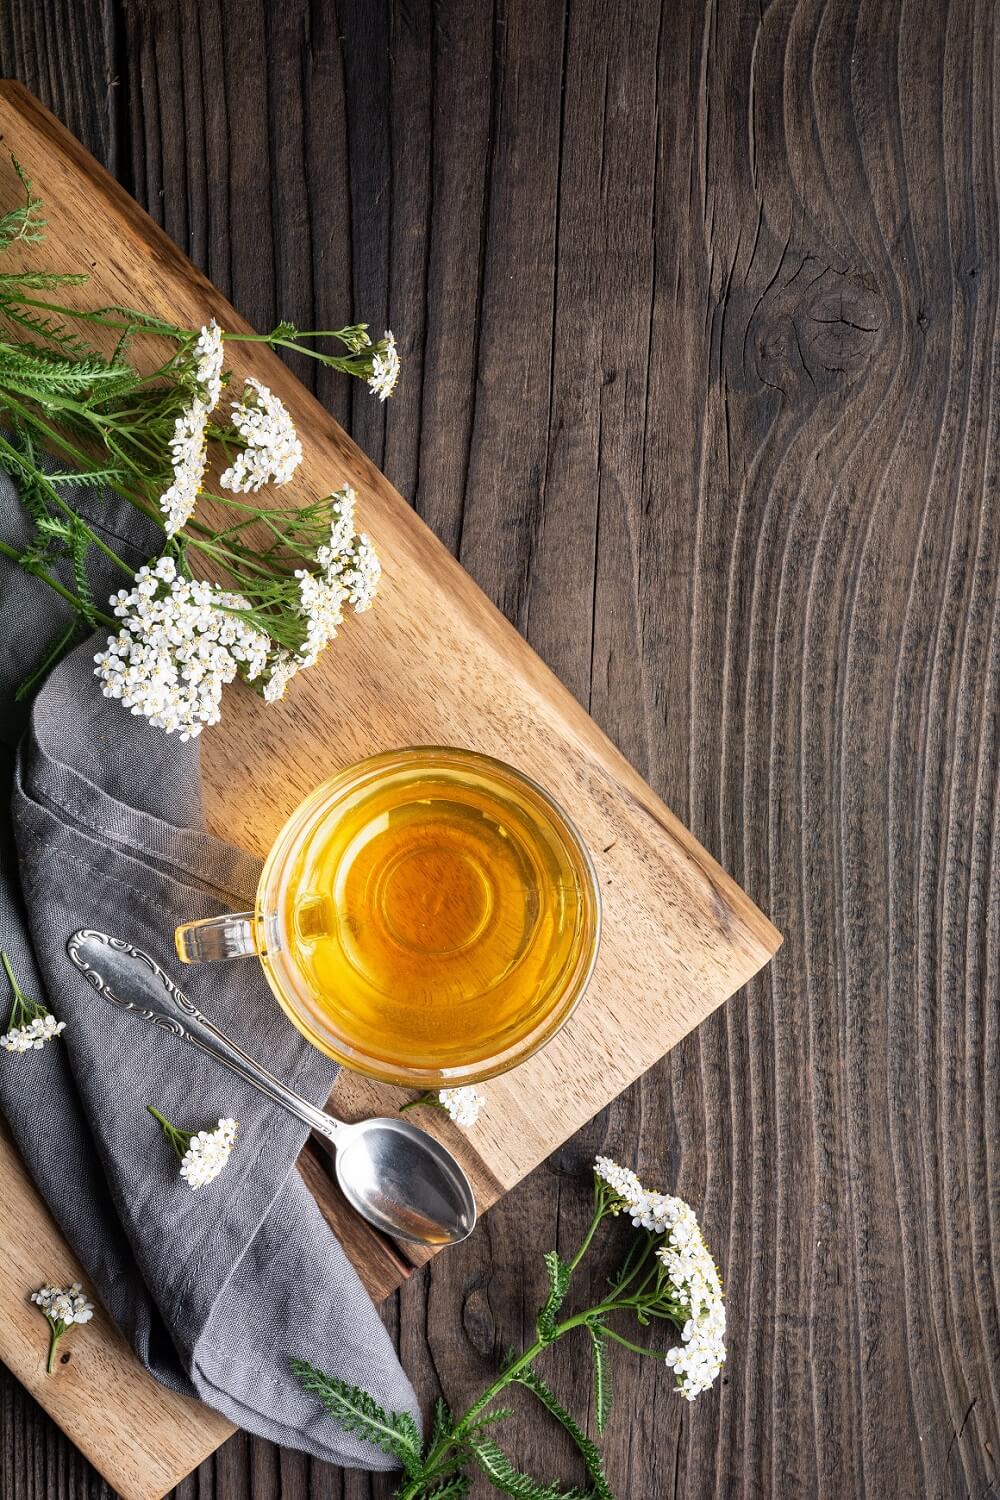 Čaj od stolisnika također se tradicionalno koristi za liječenje prehlade, gripe i drugih respiratornih stanja